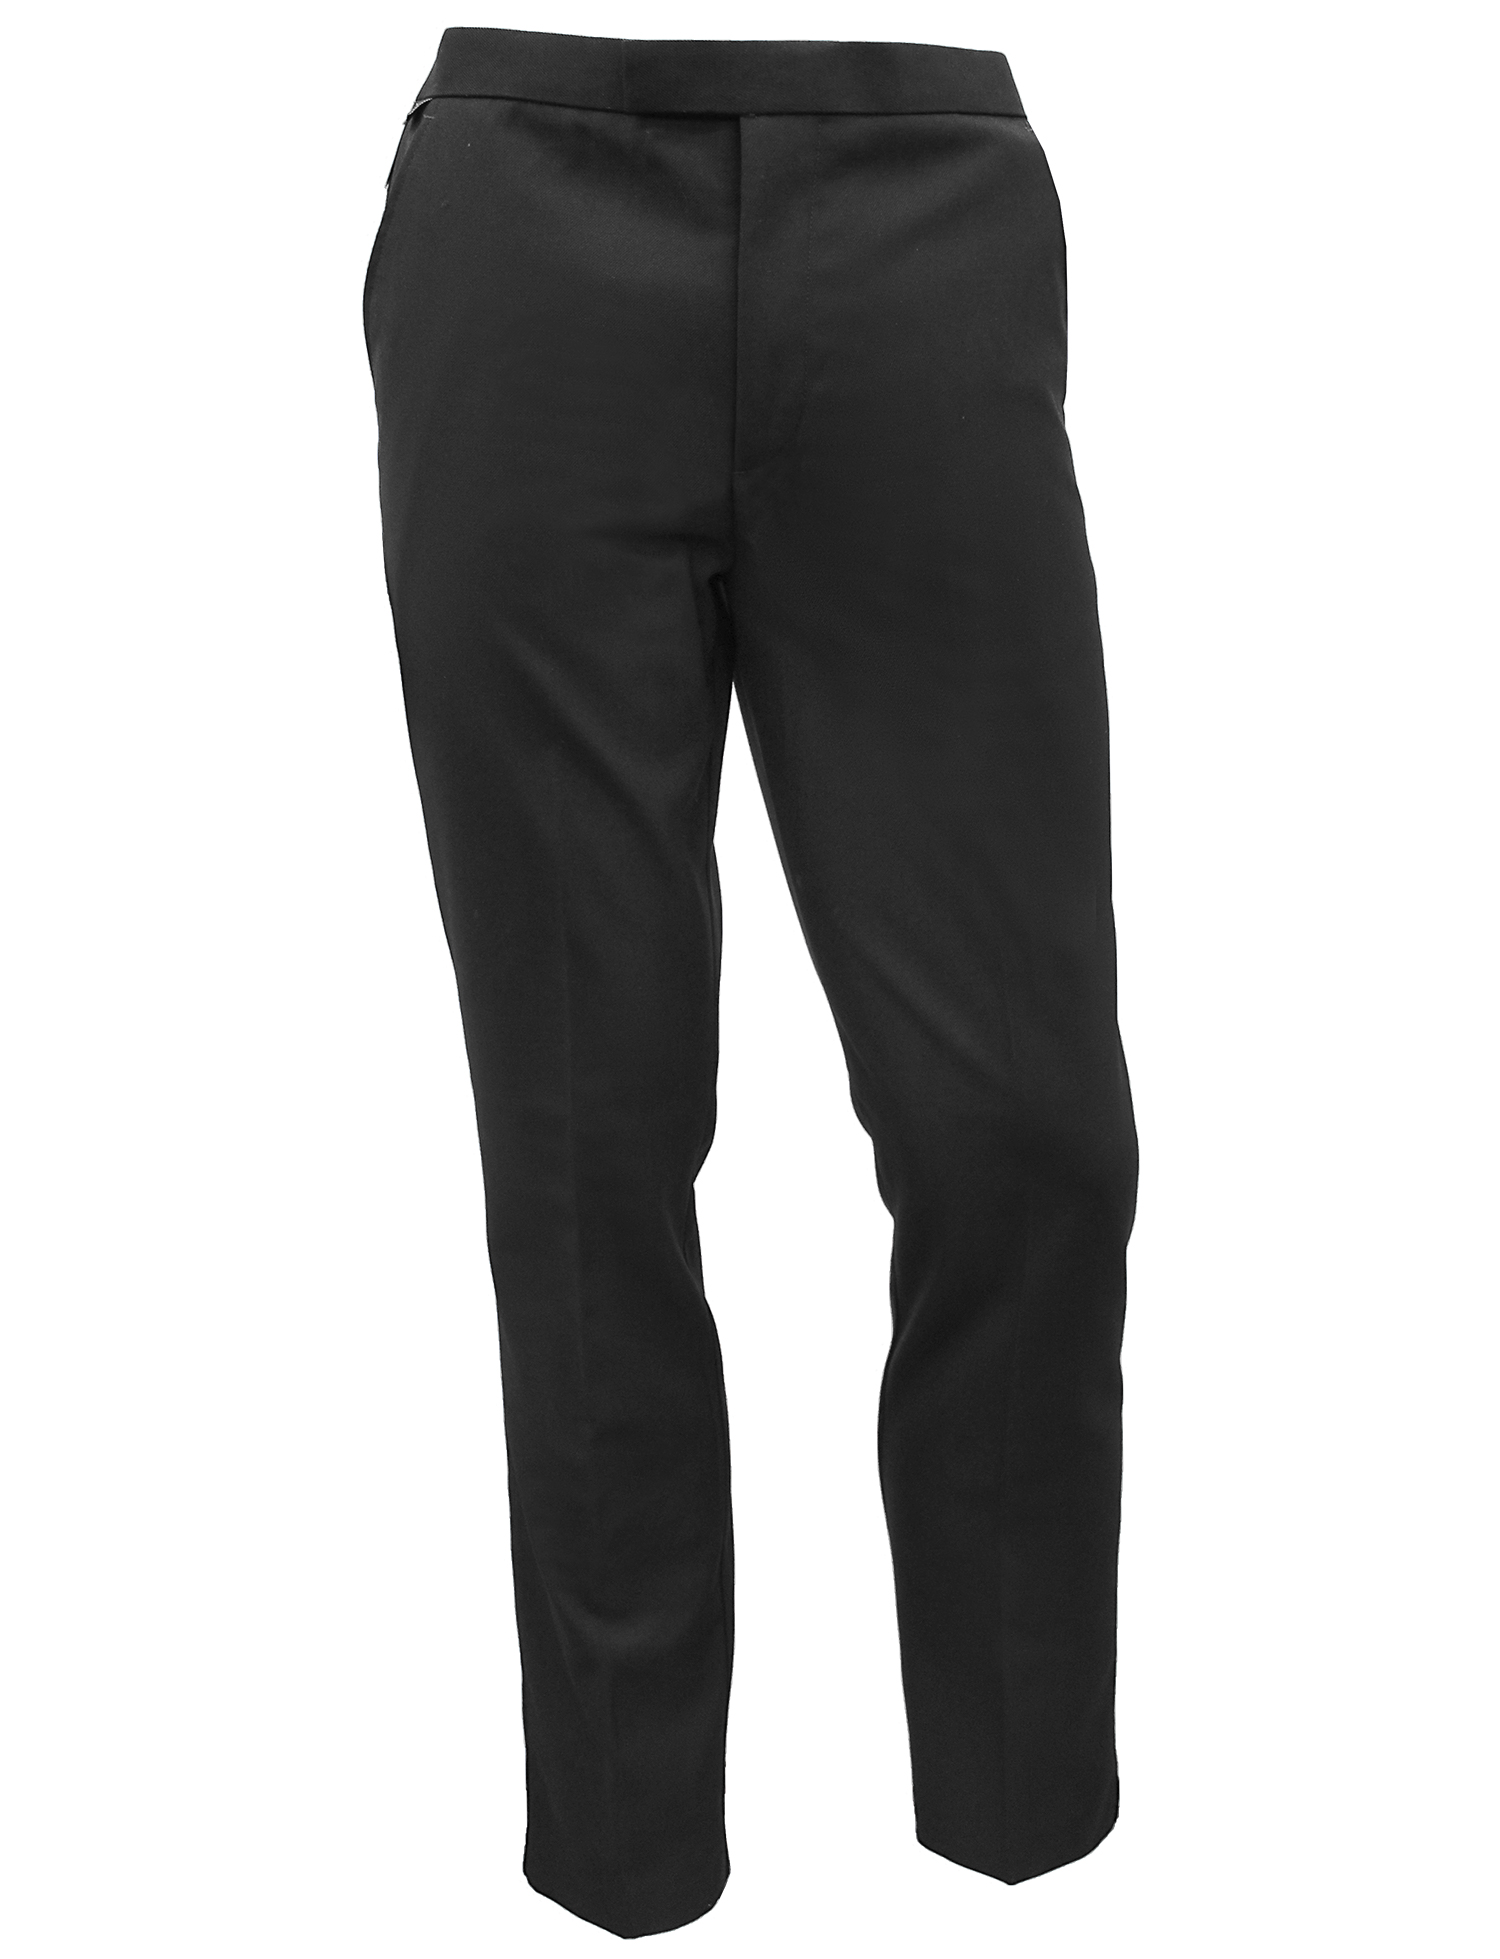 Black Sturdy Elastic Waist Boys Trousers (246) - Quality Schoolwear